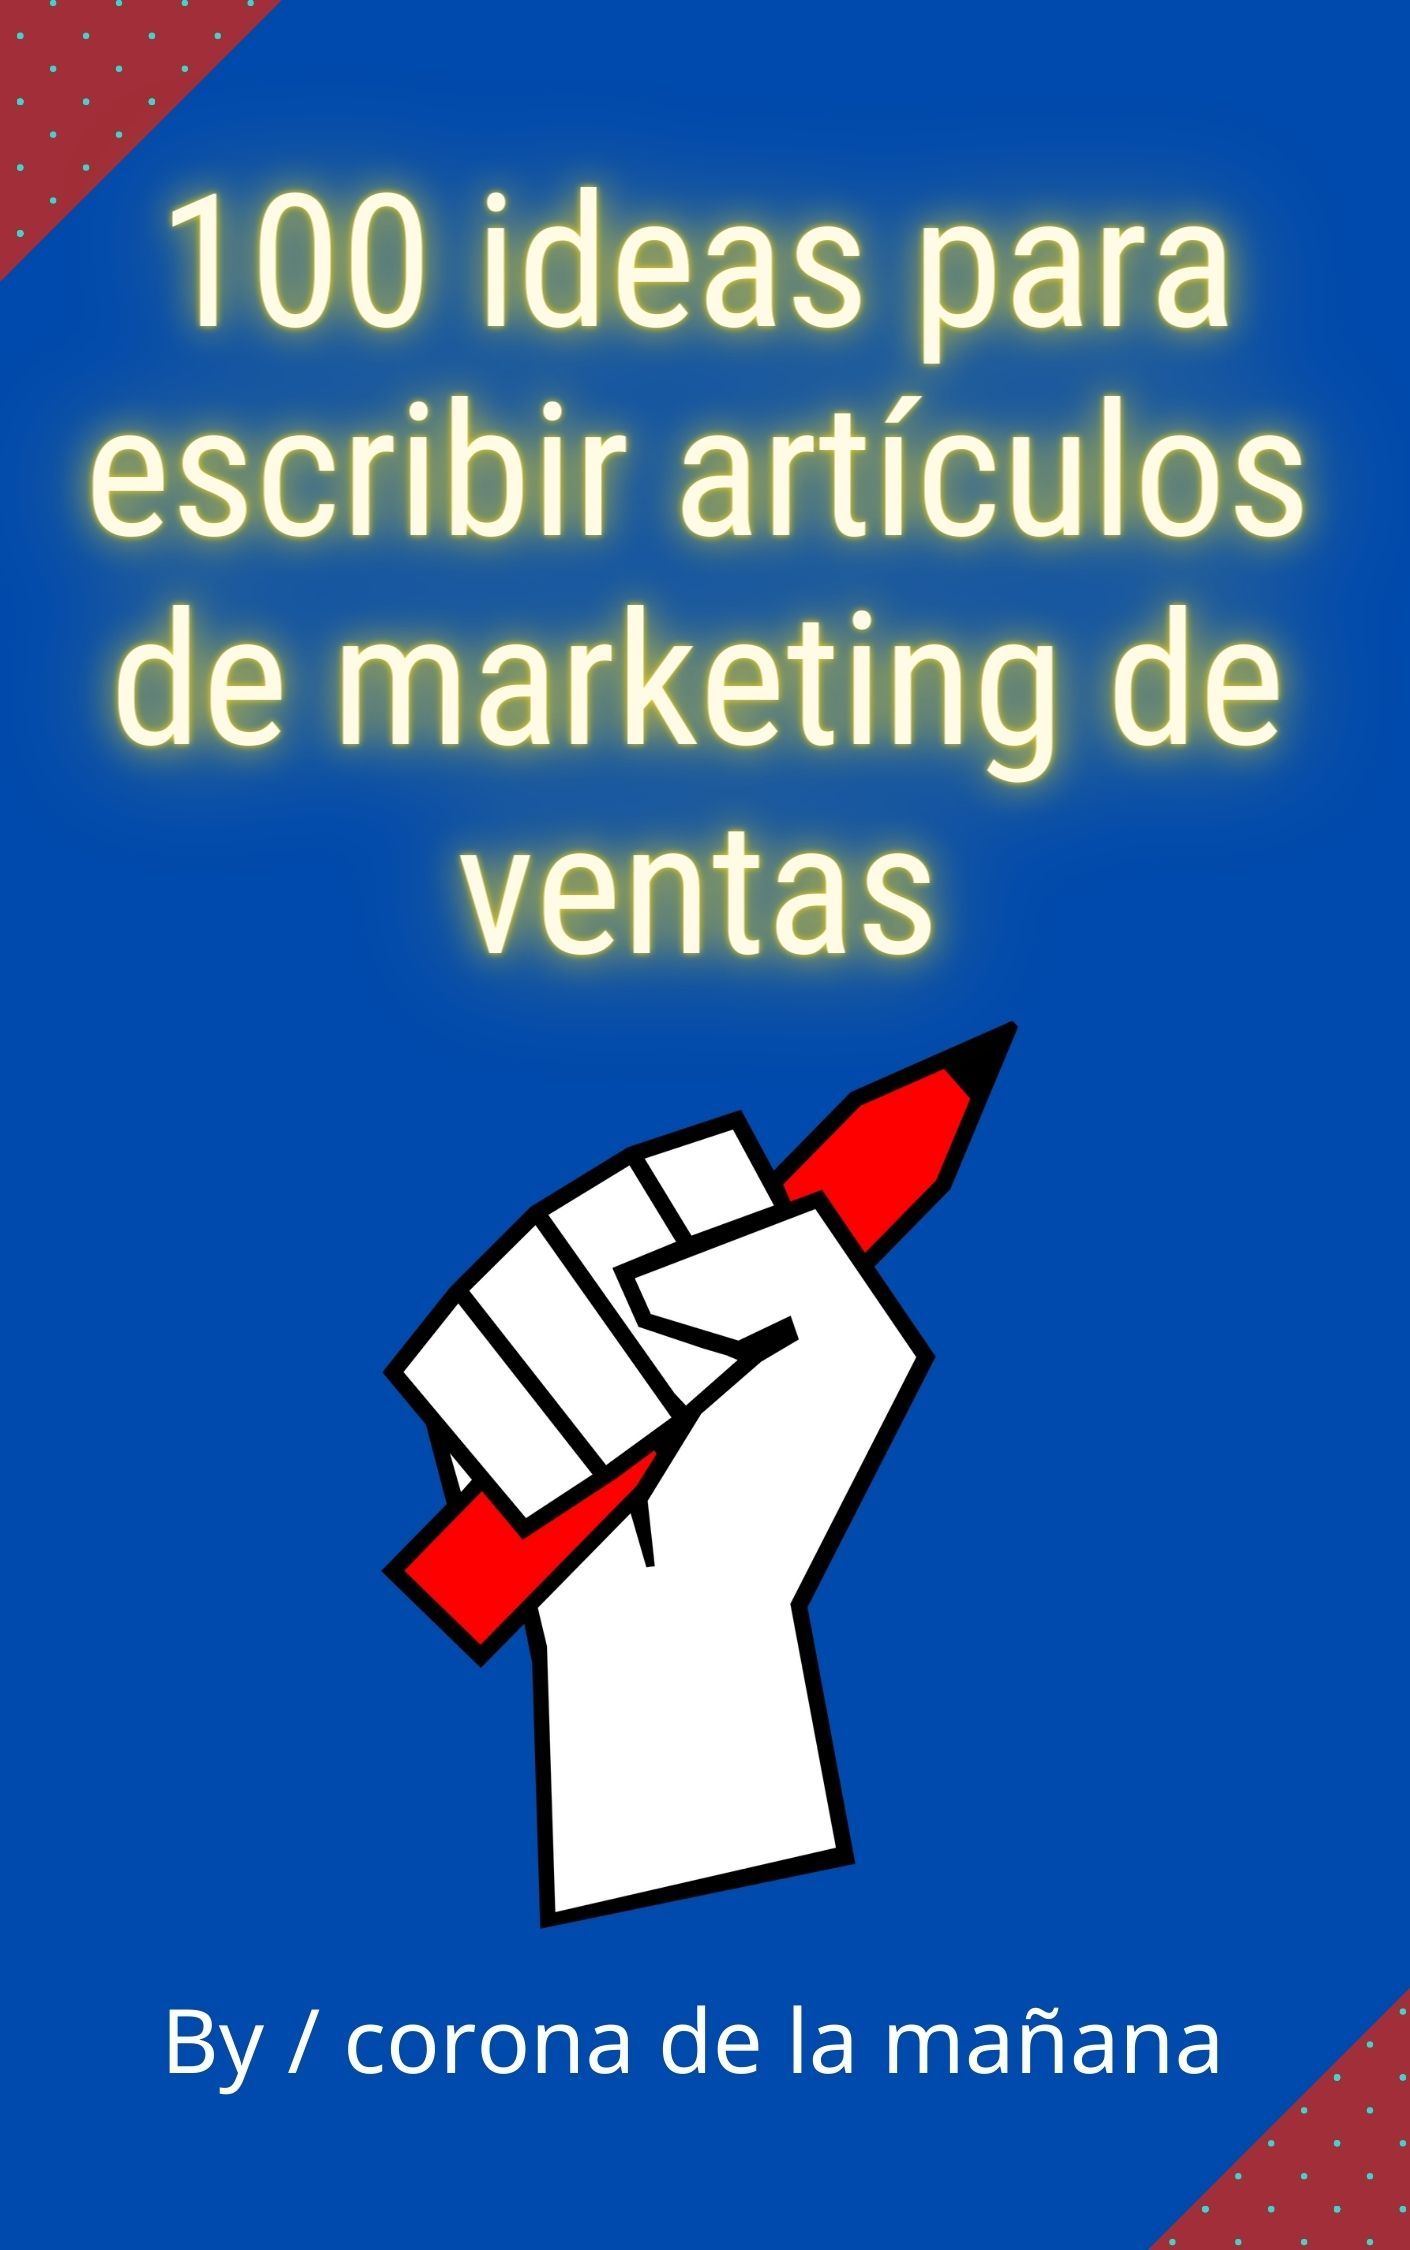 100 ideas para escribir artículos de marketing de ventas's Book Image